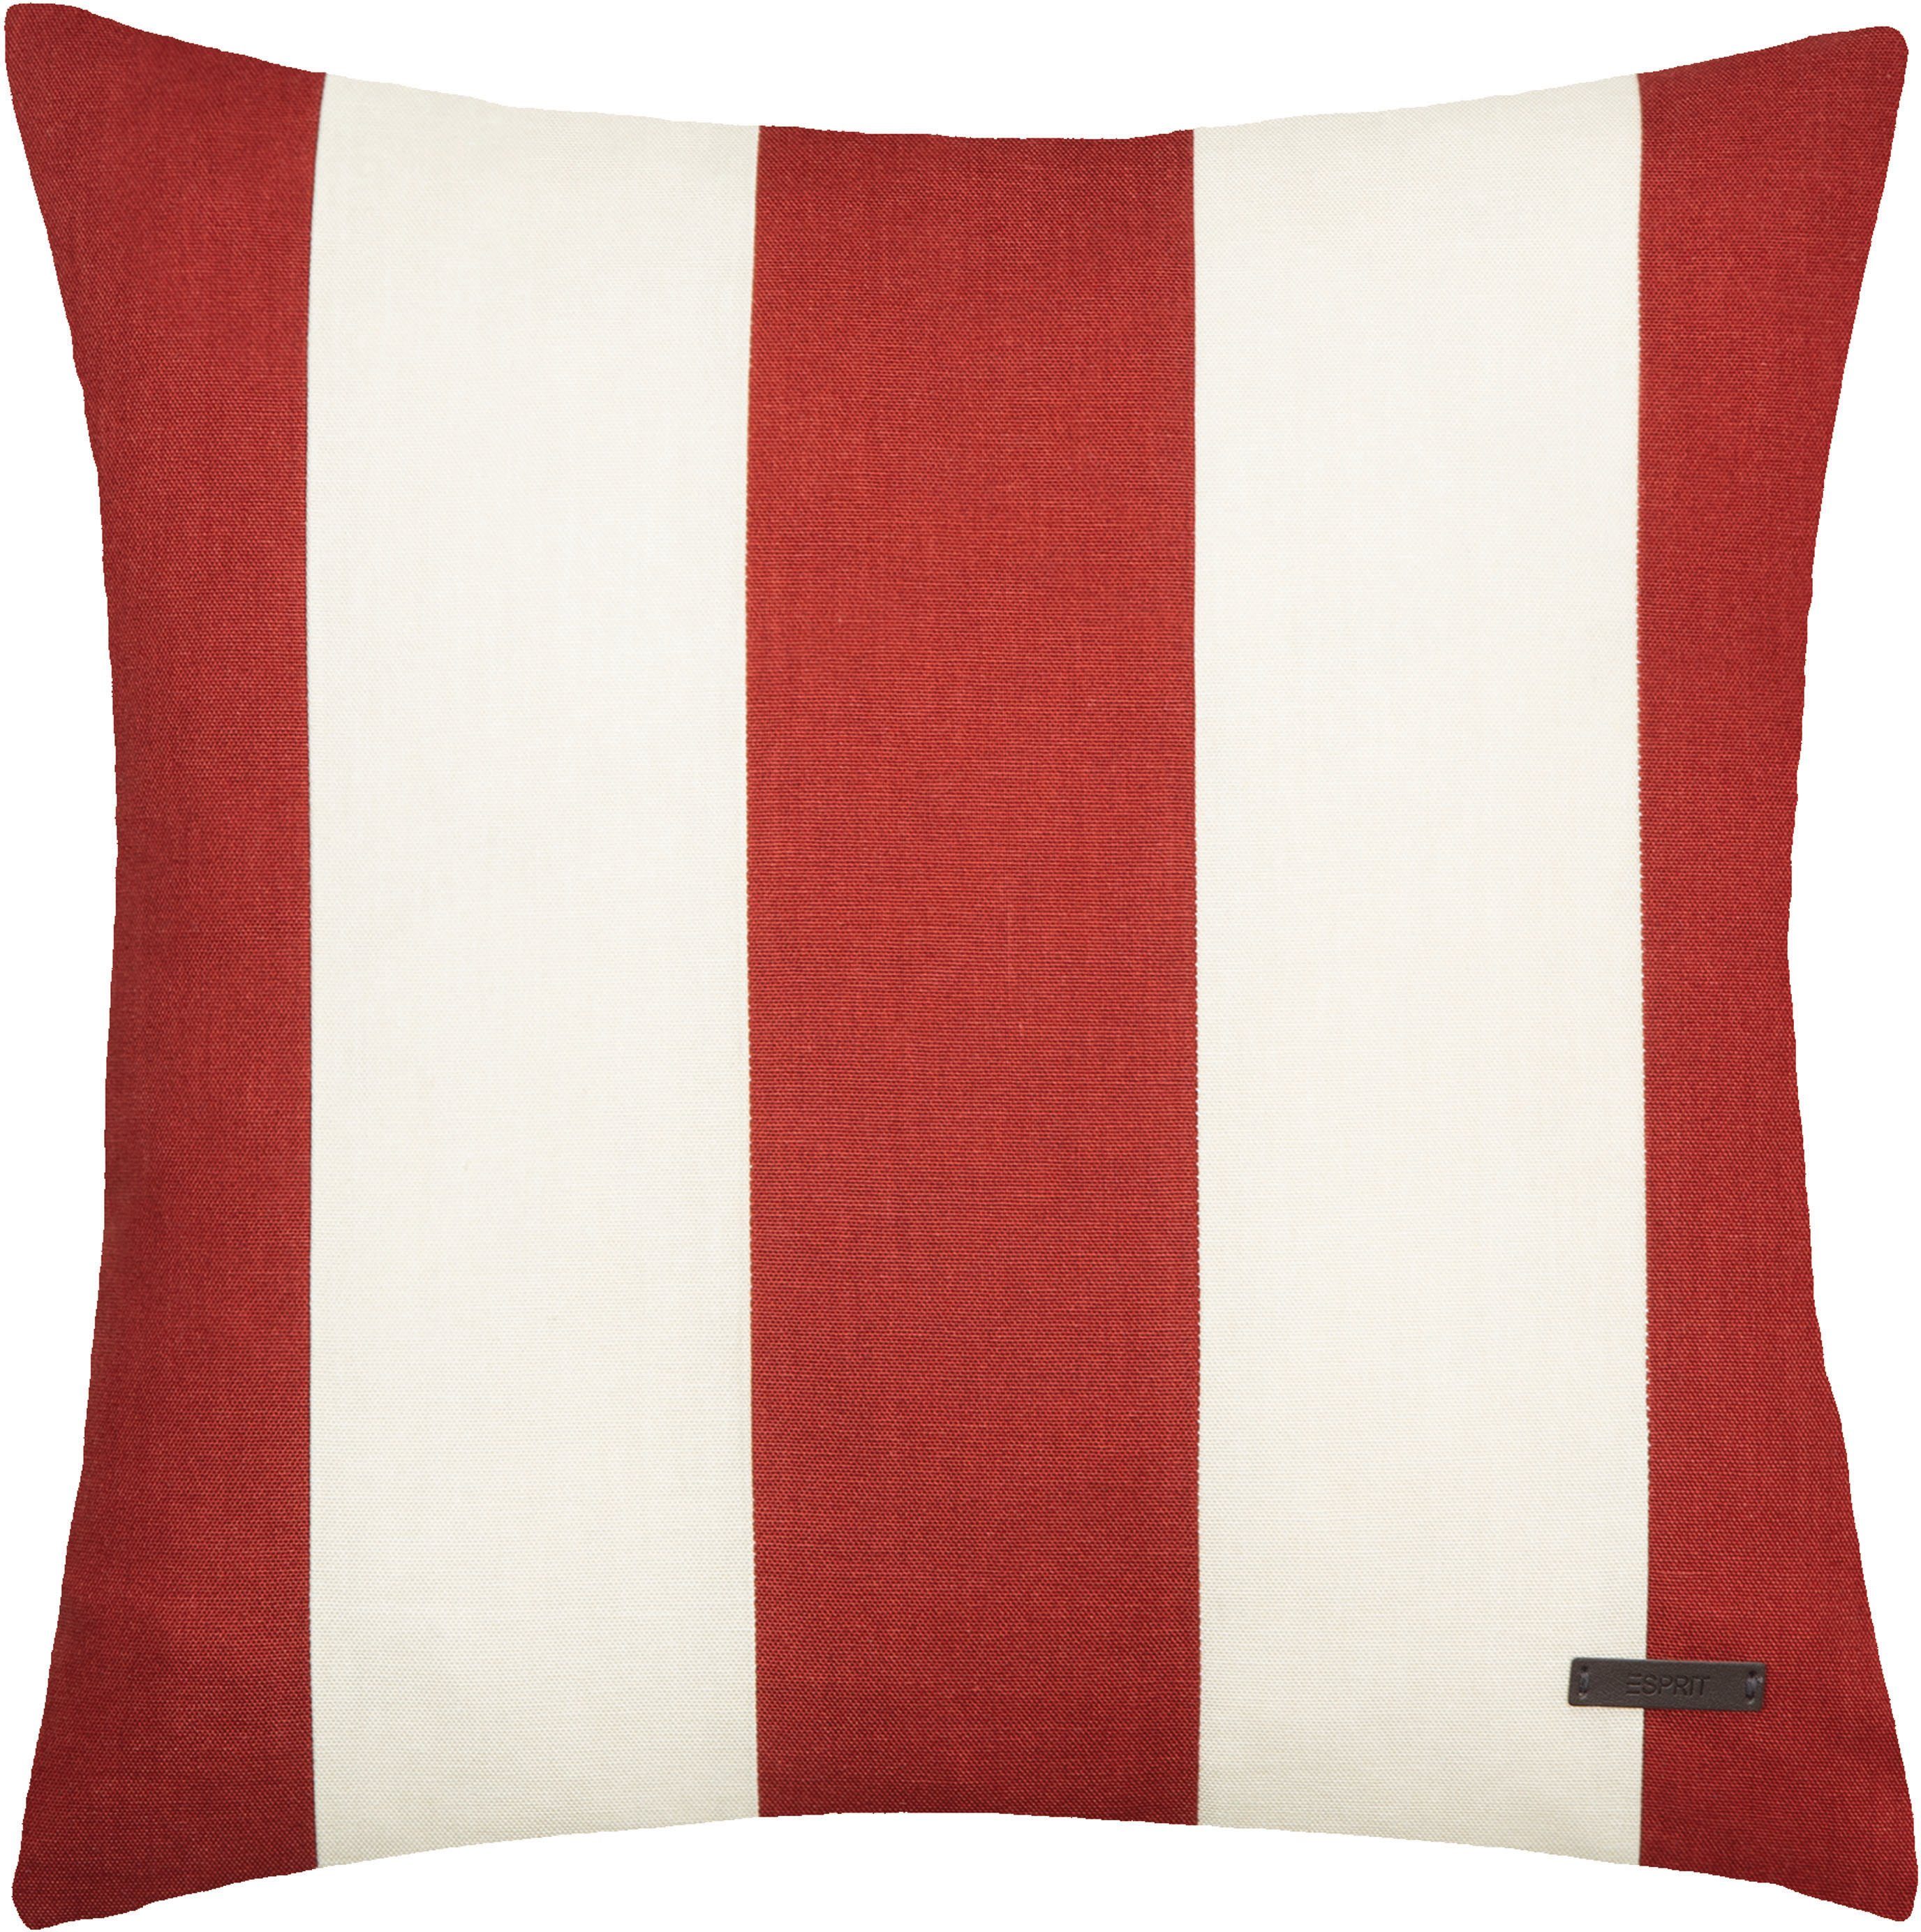 Esprit Dekokissen Neo Stripe, mit Streifen, Kissenhülle ohne Füllung, 1 Stück rot/rostrot